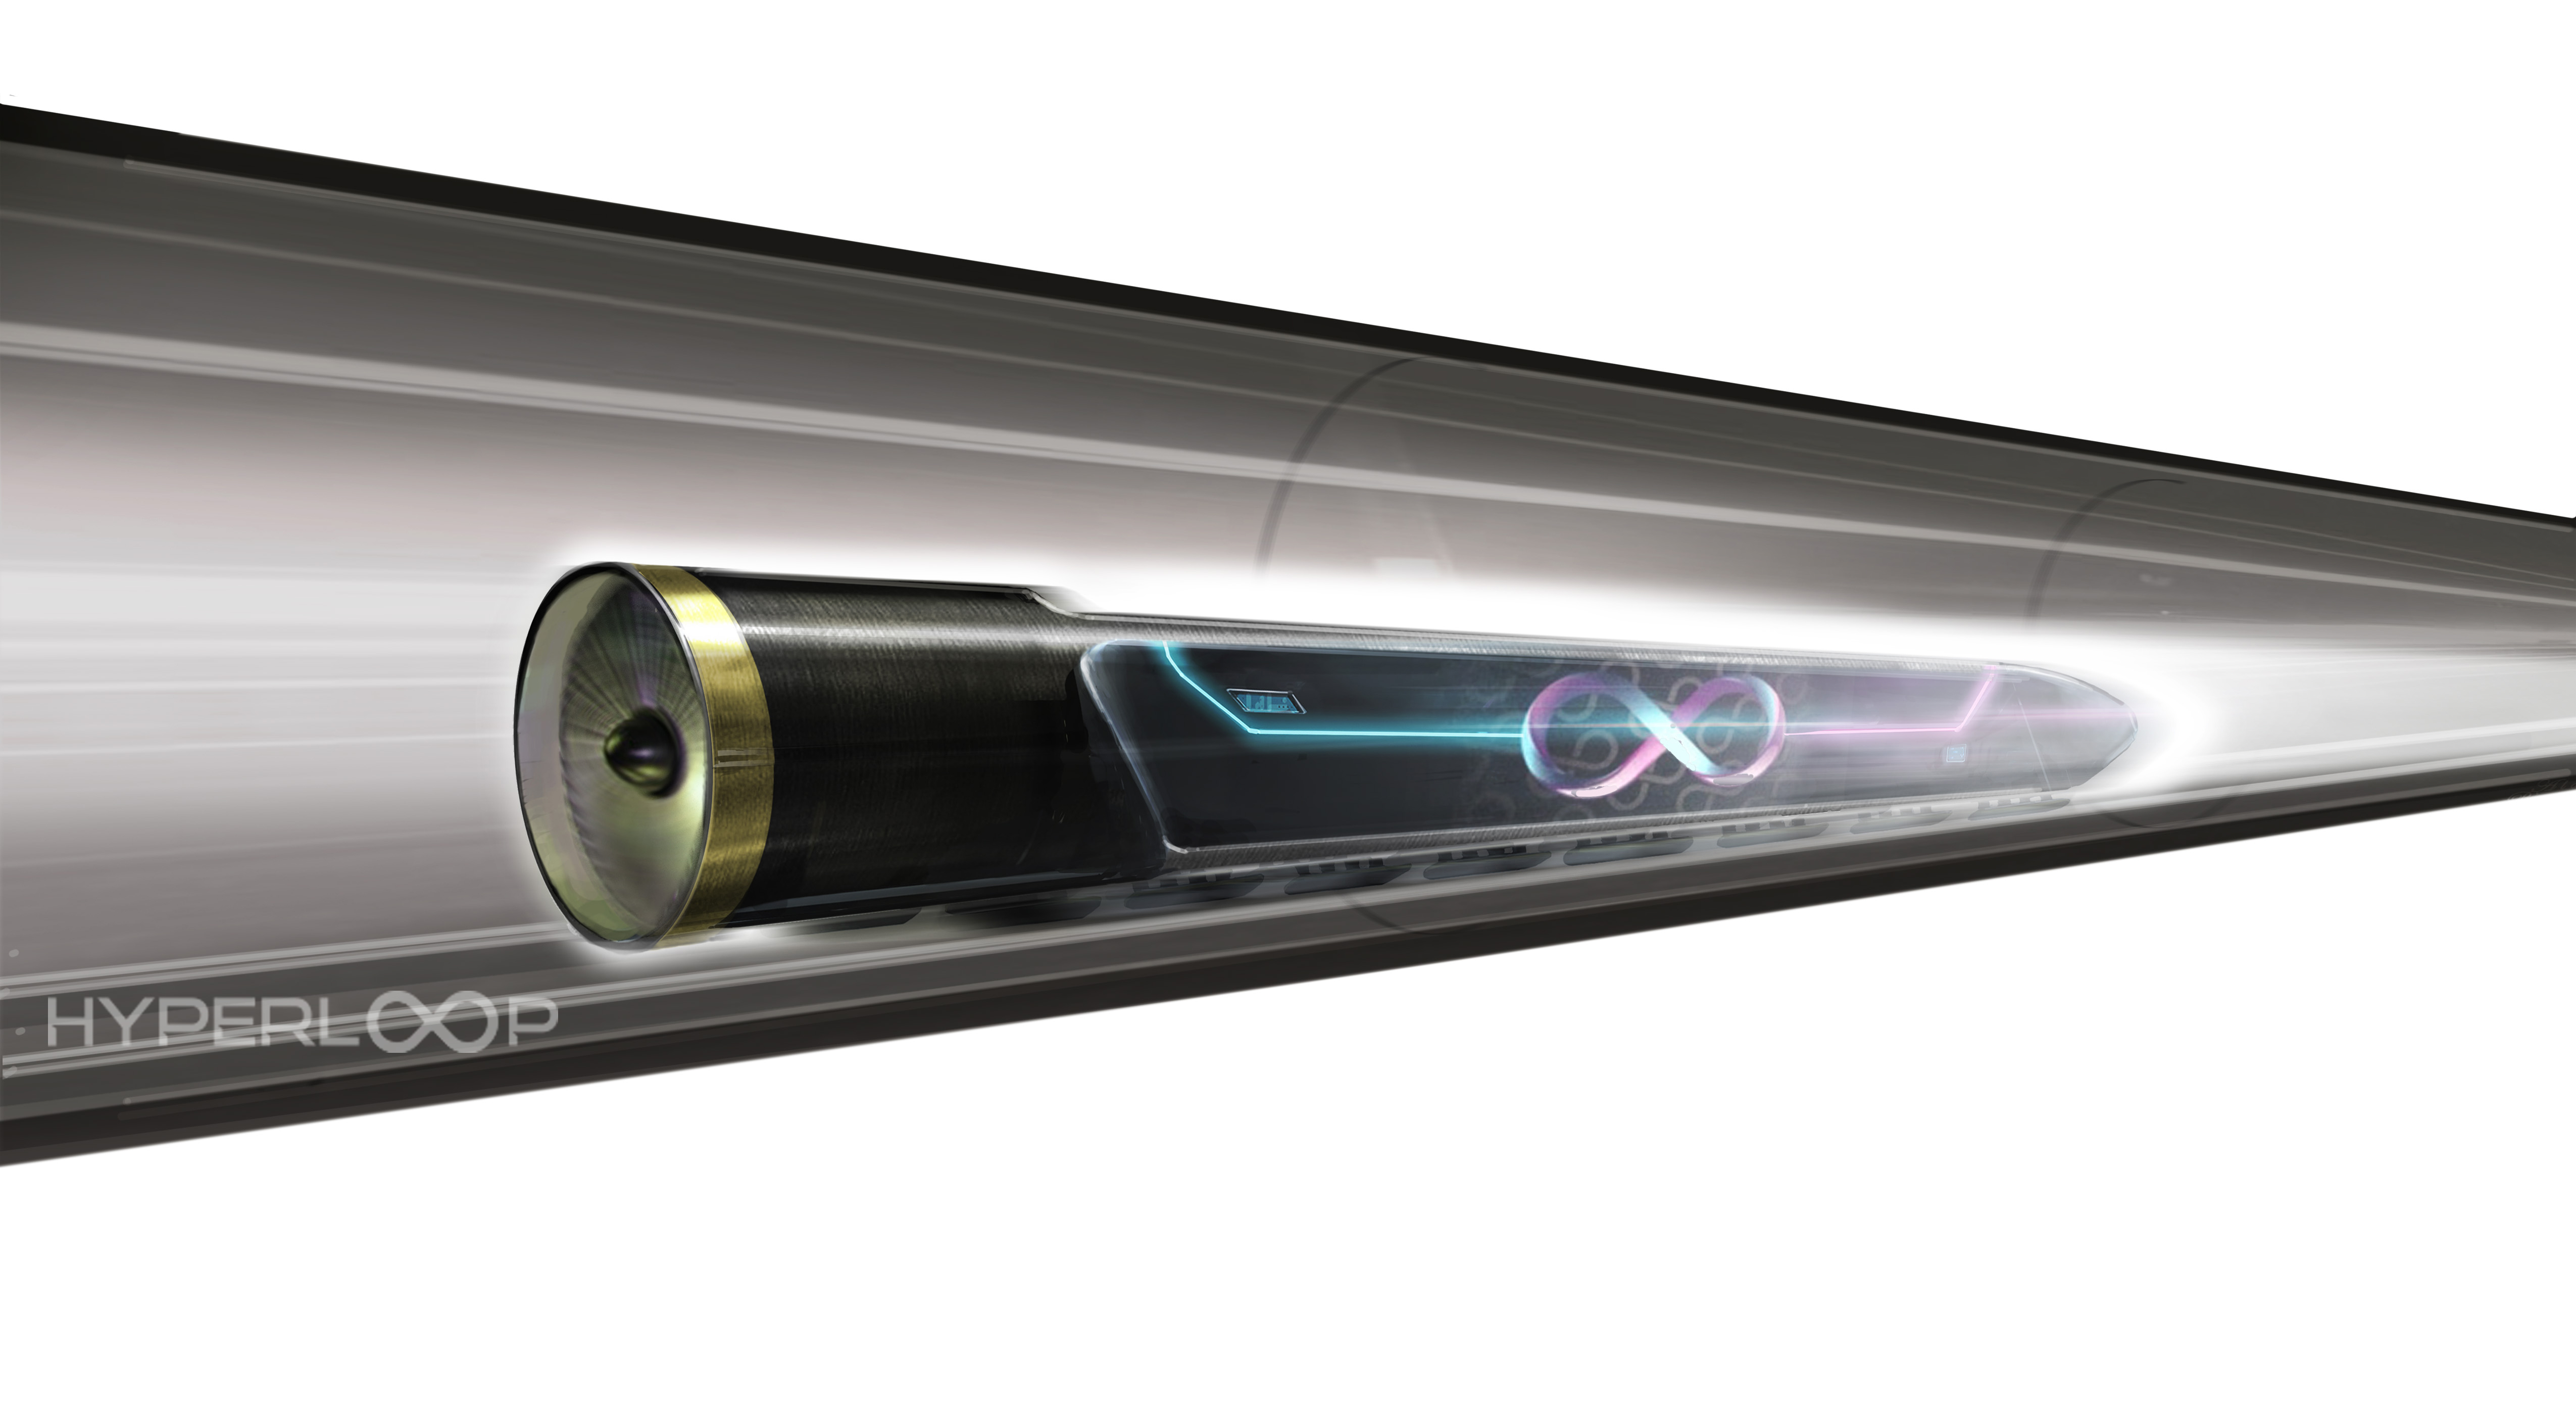 Projekt Hyperloop One predvideva vožnjo s hitrostjo do 1.200 km/h v posebnih kapsulah pod nizkim pritiskom.